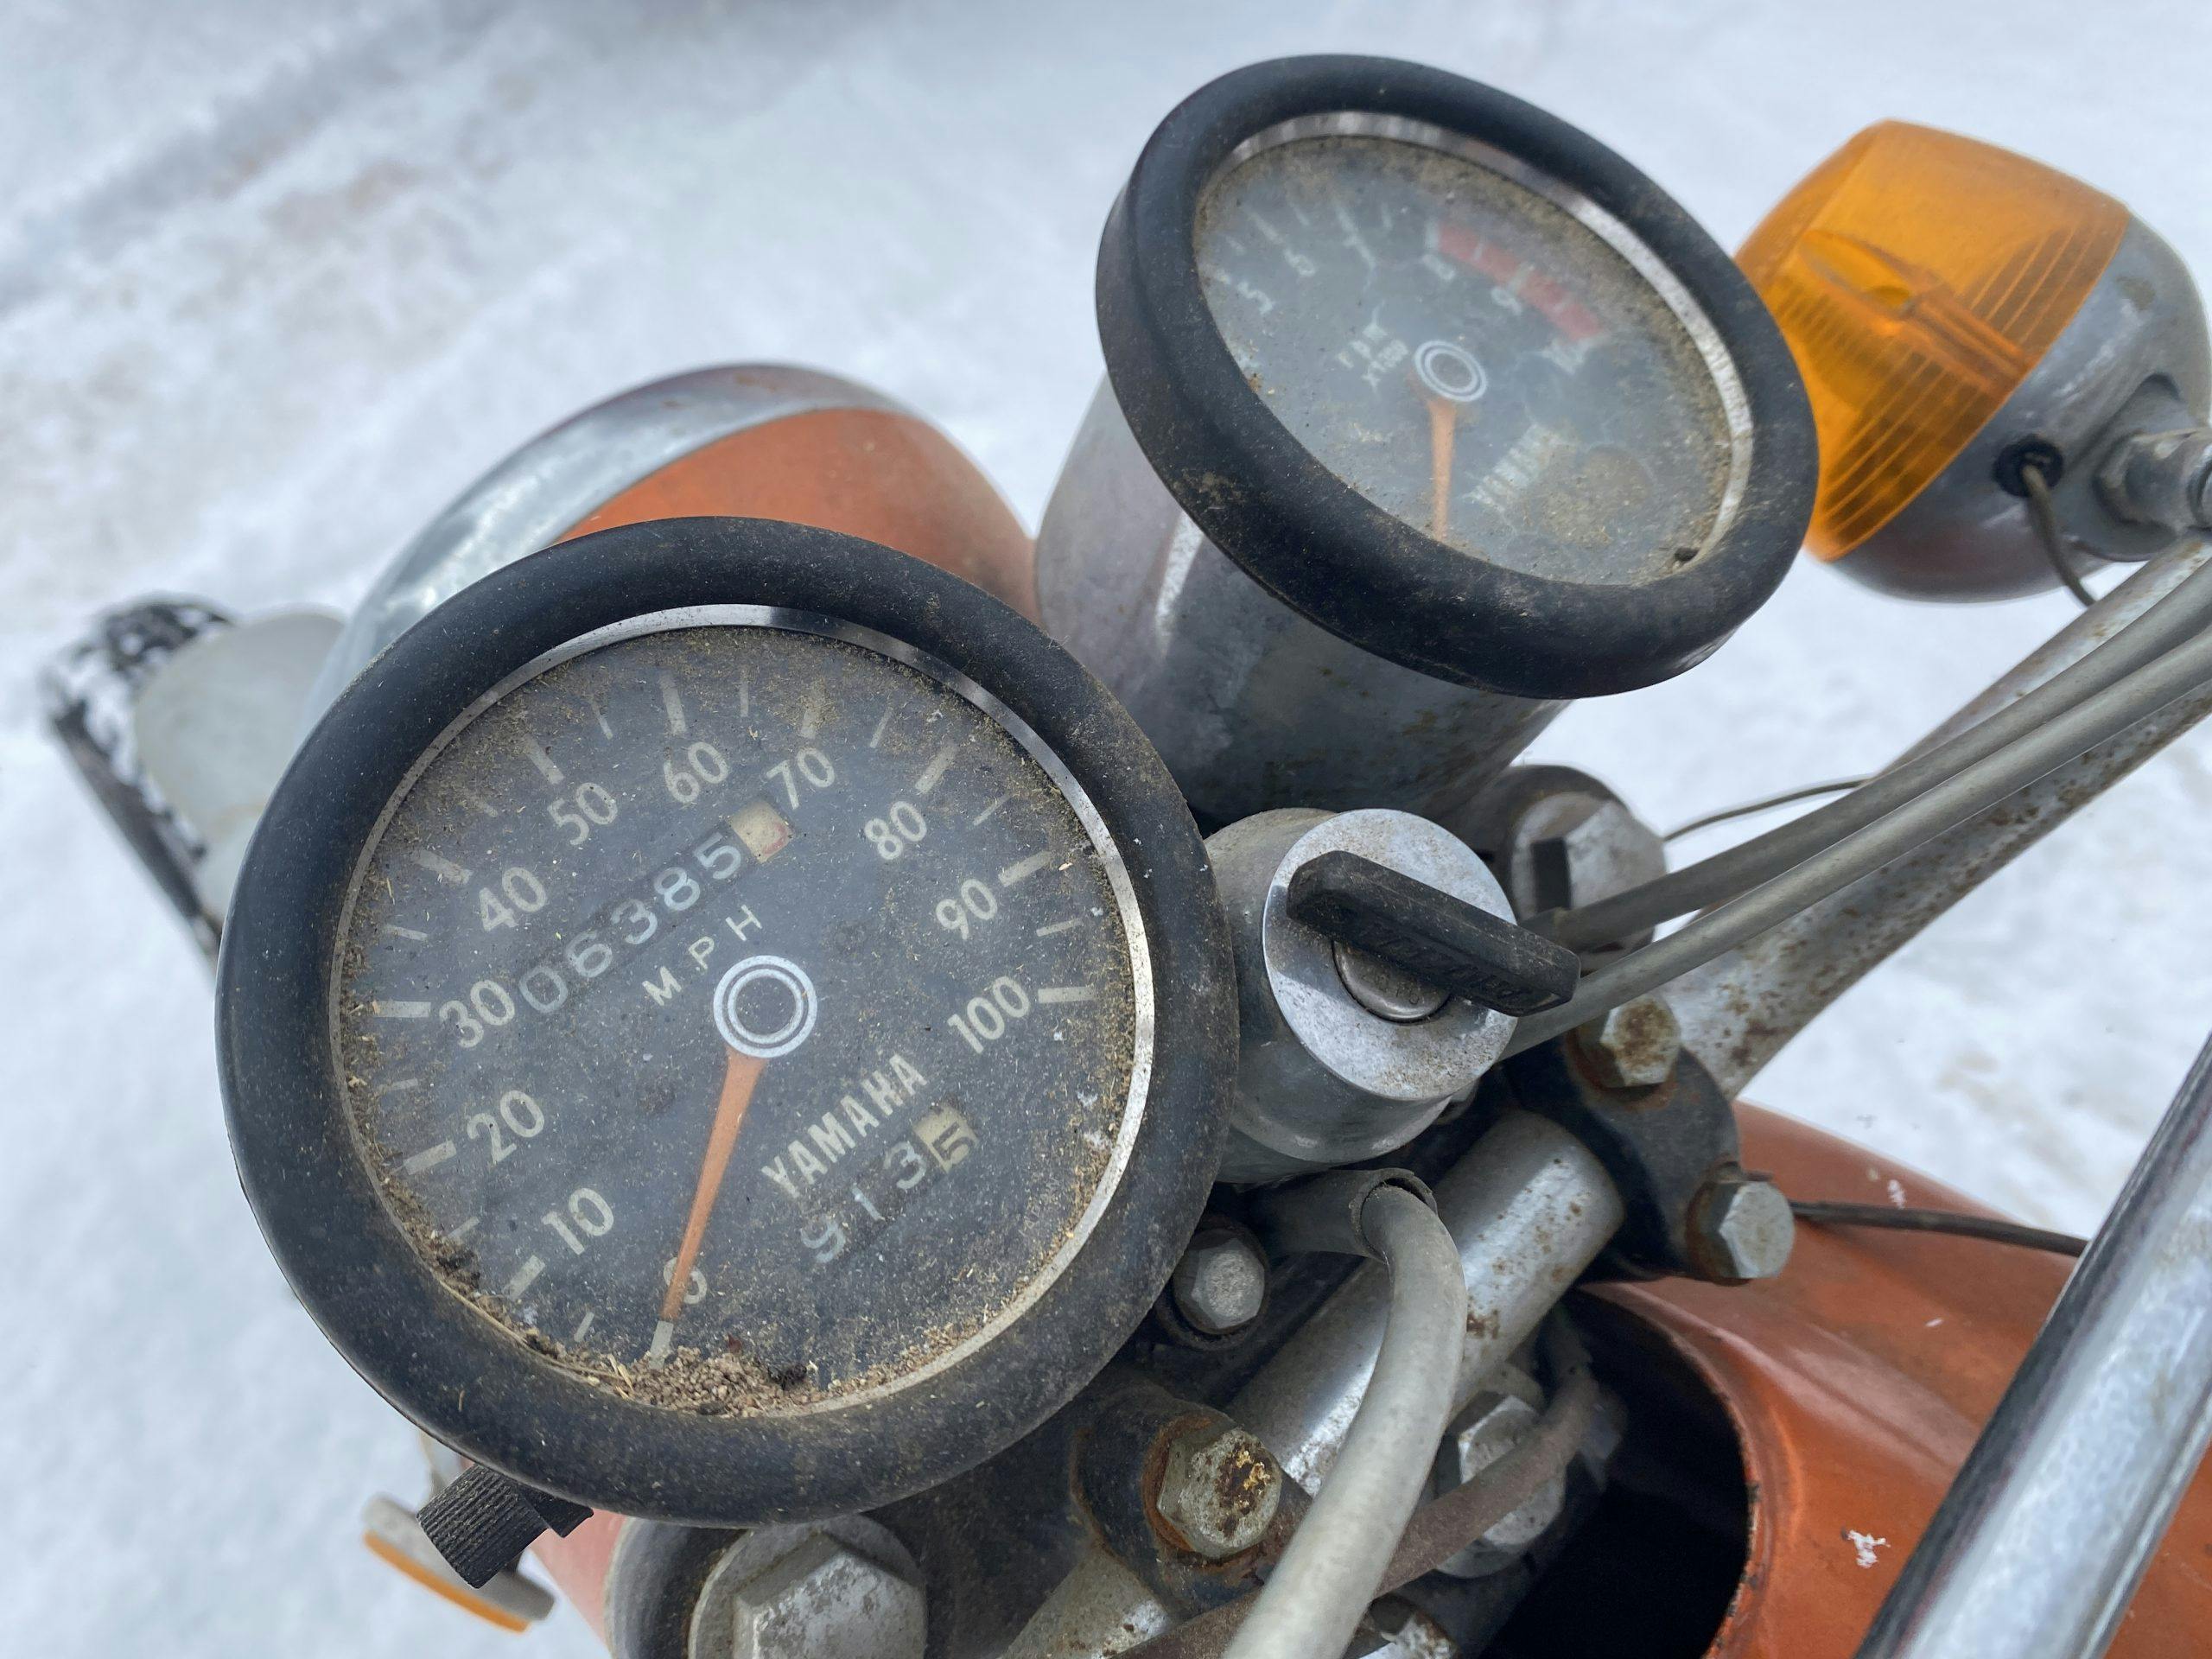 Yamaha motorcycle gauges